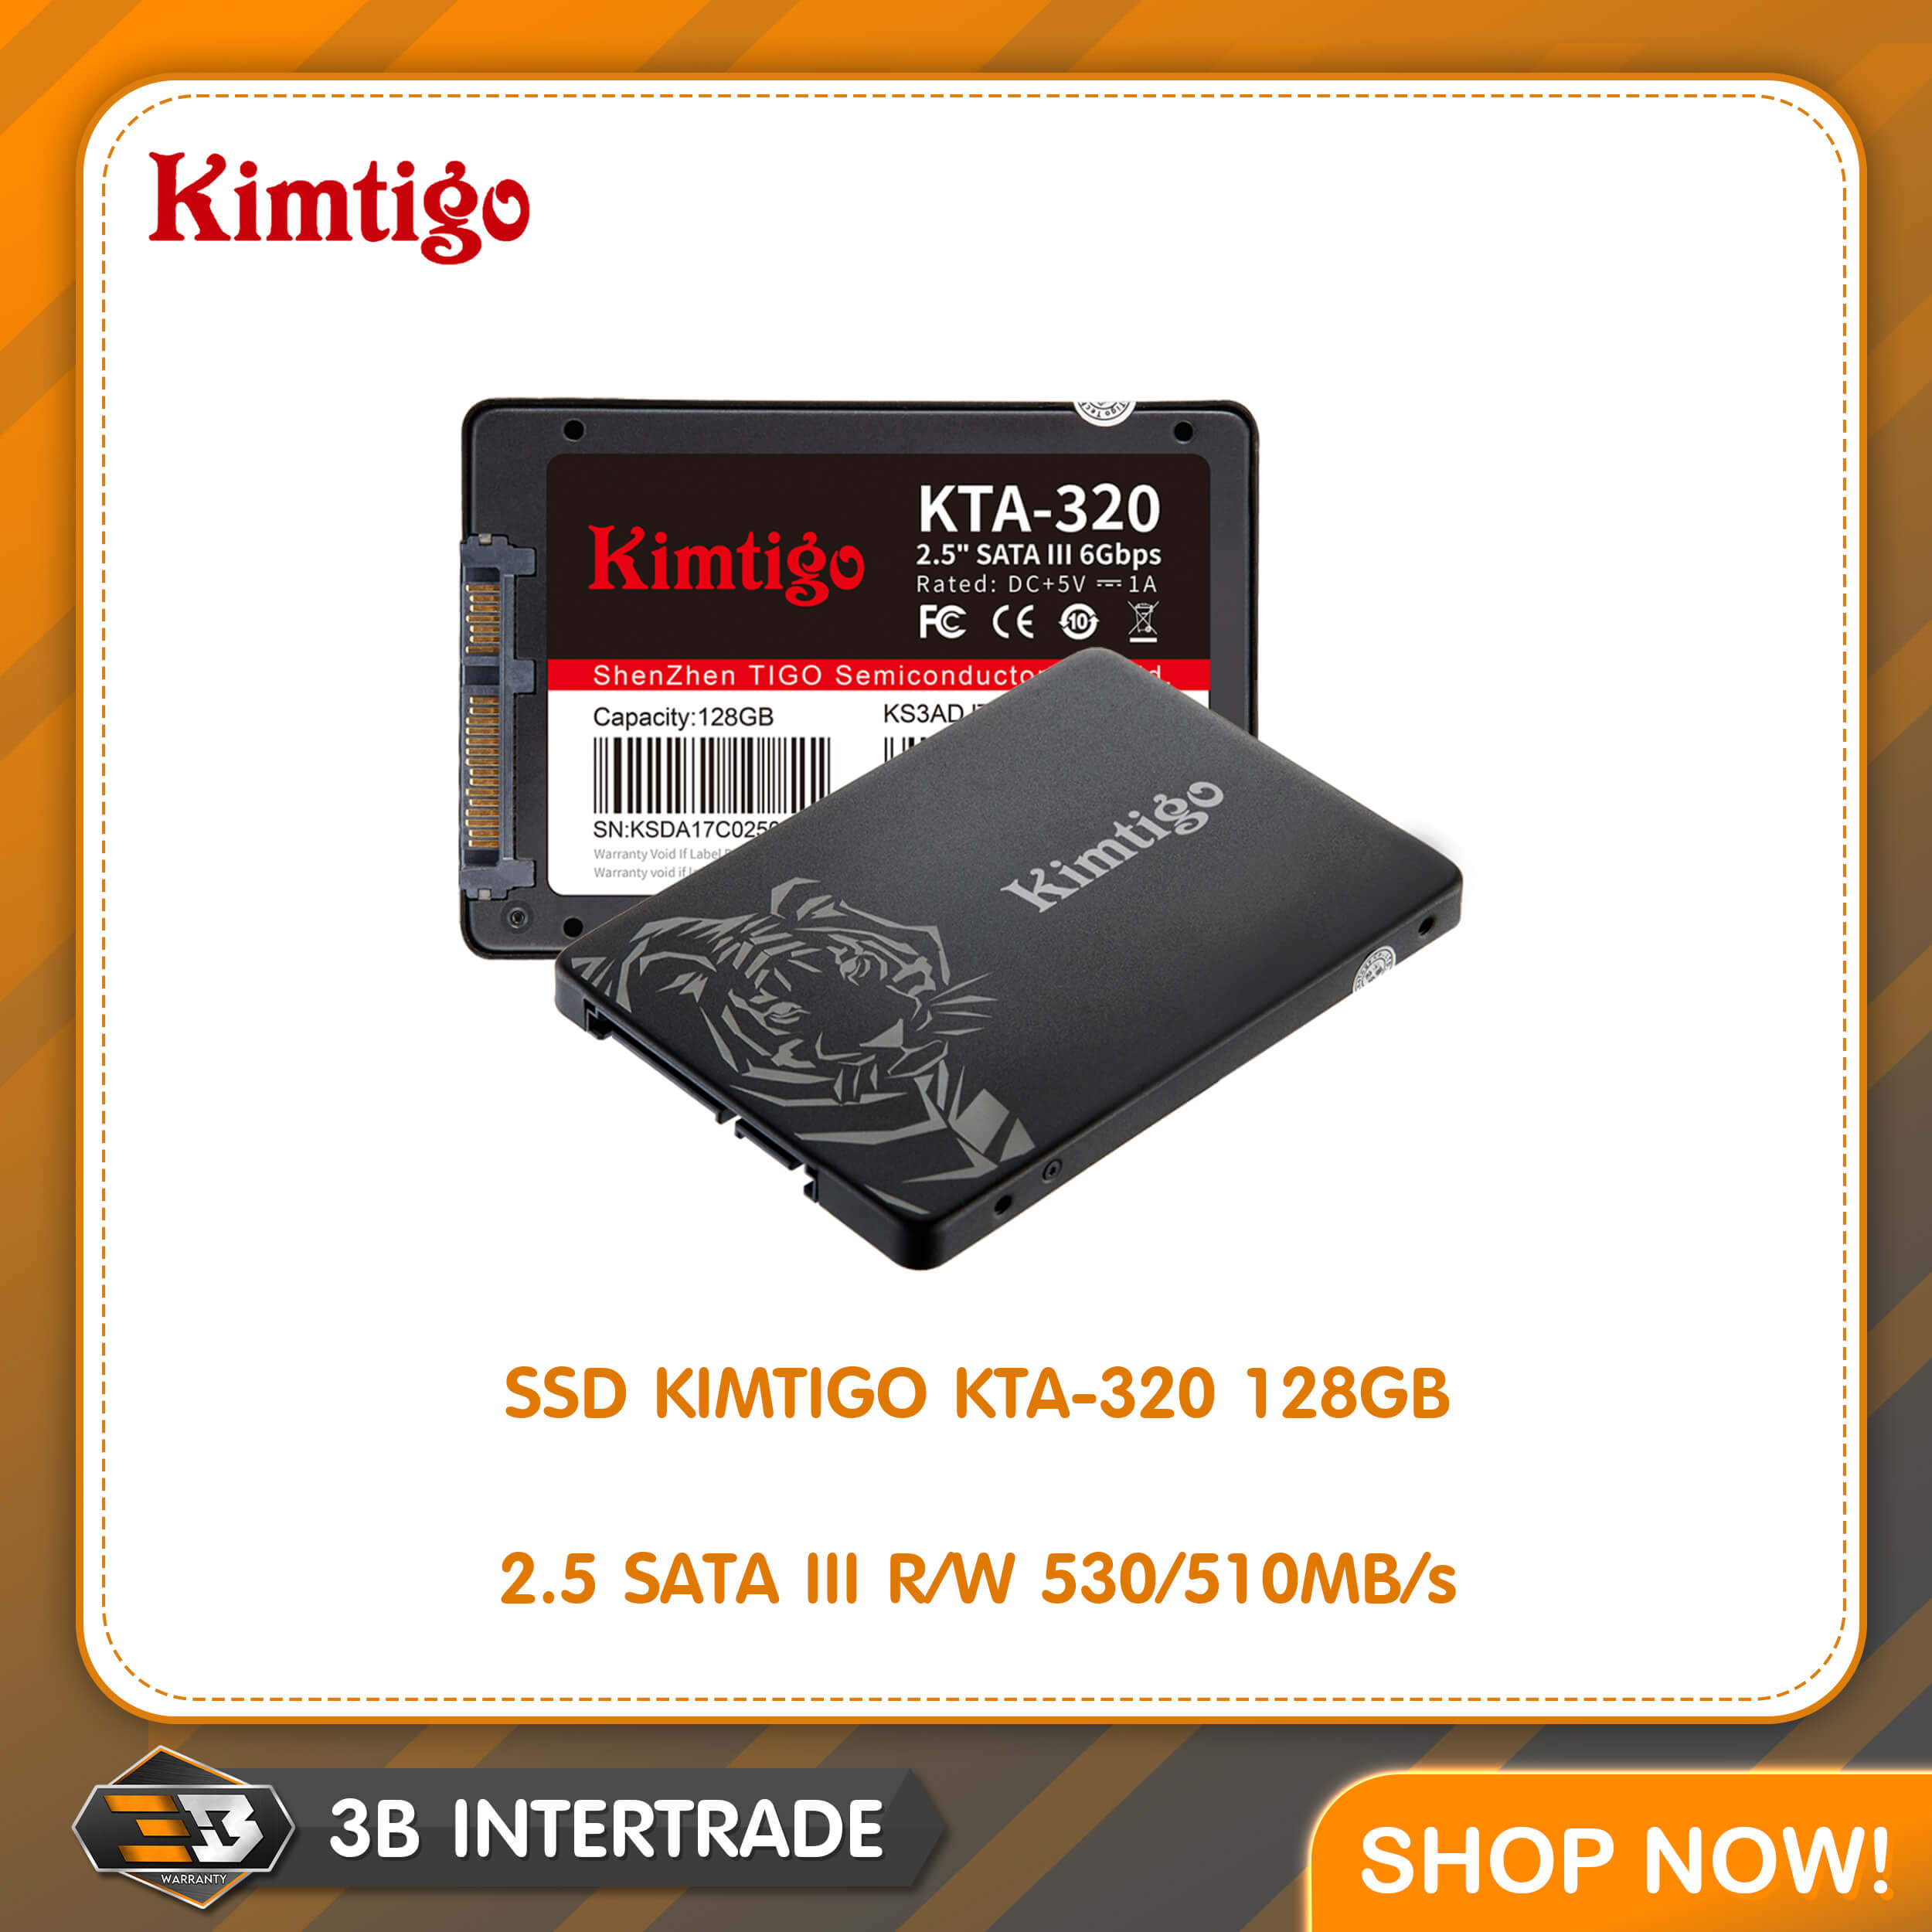 SSD KIMTIGO KTA-320 128GB